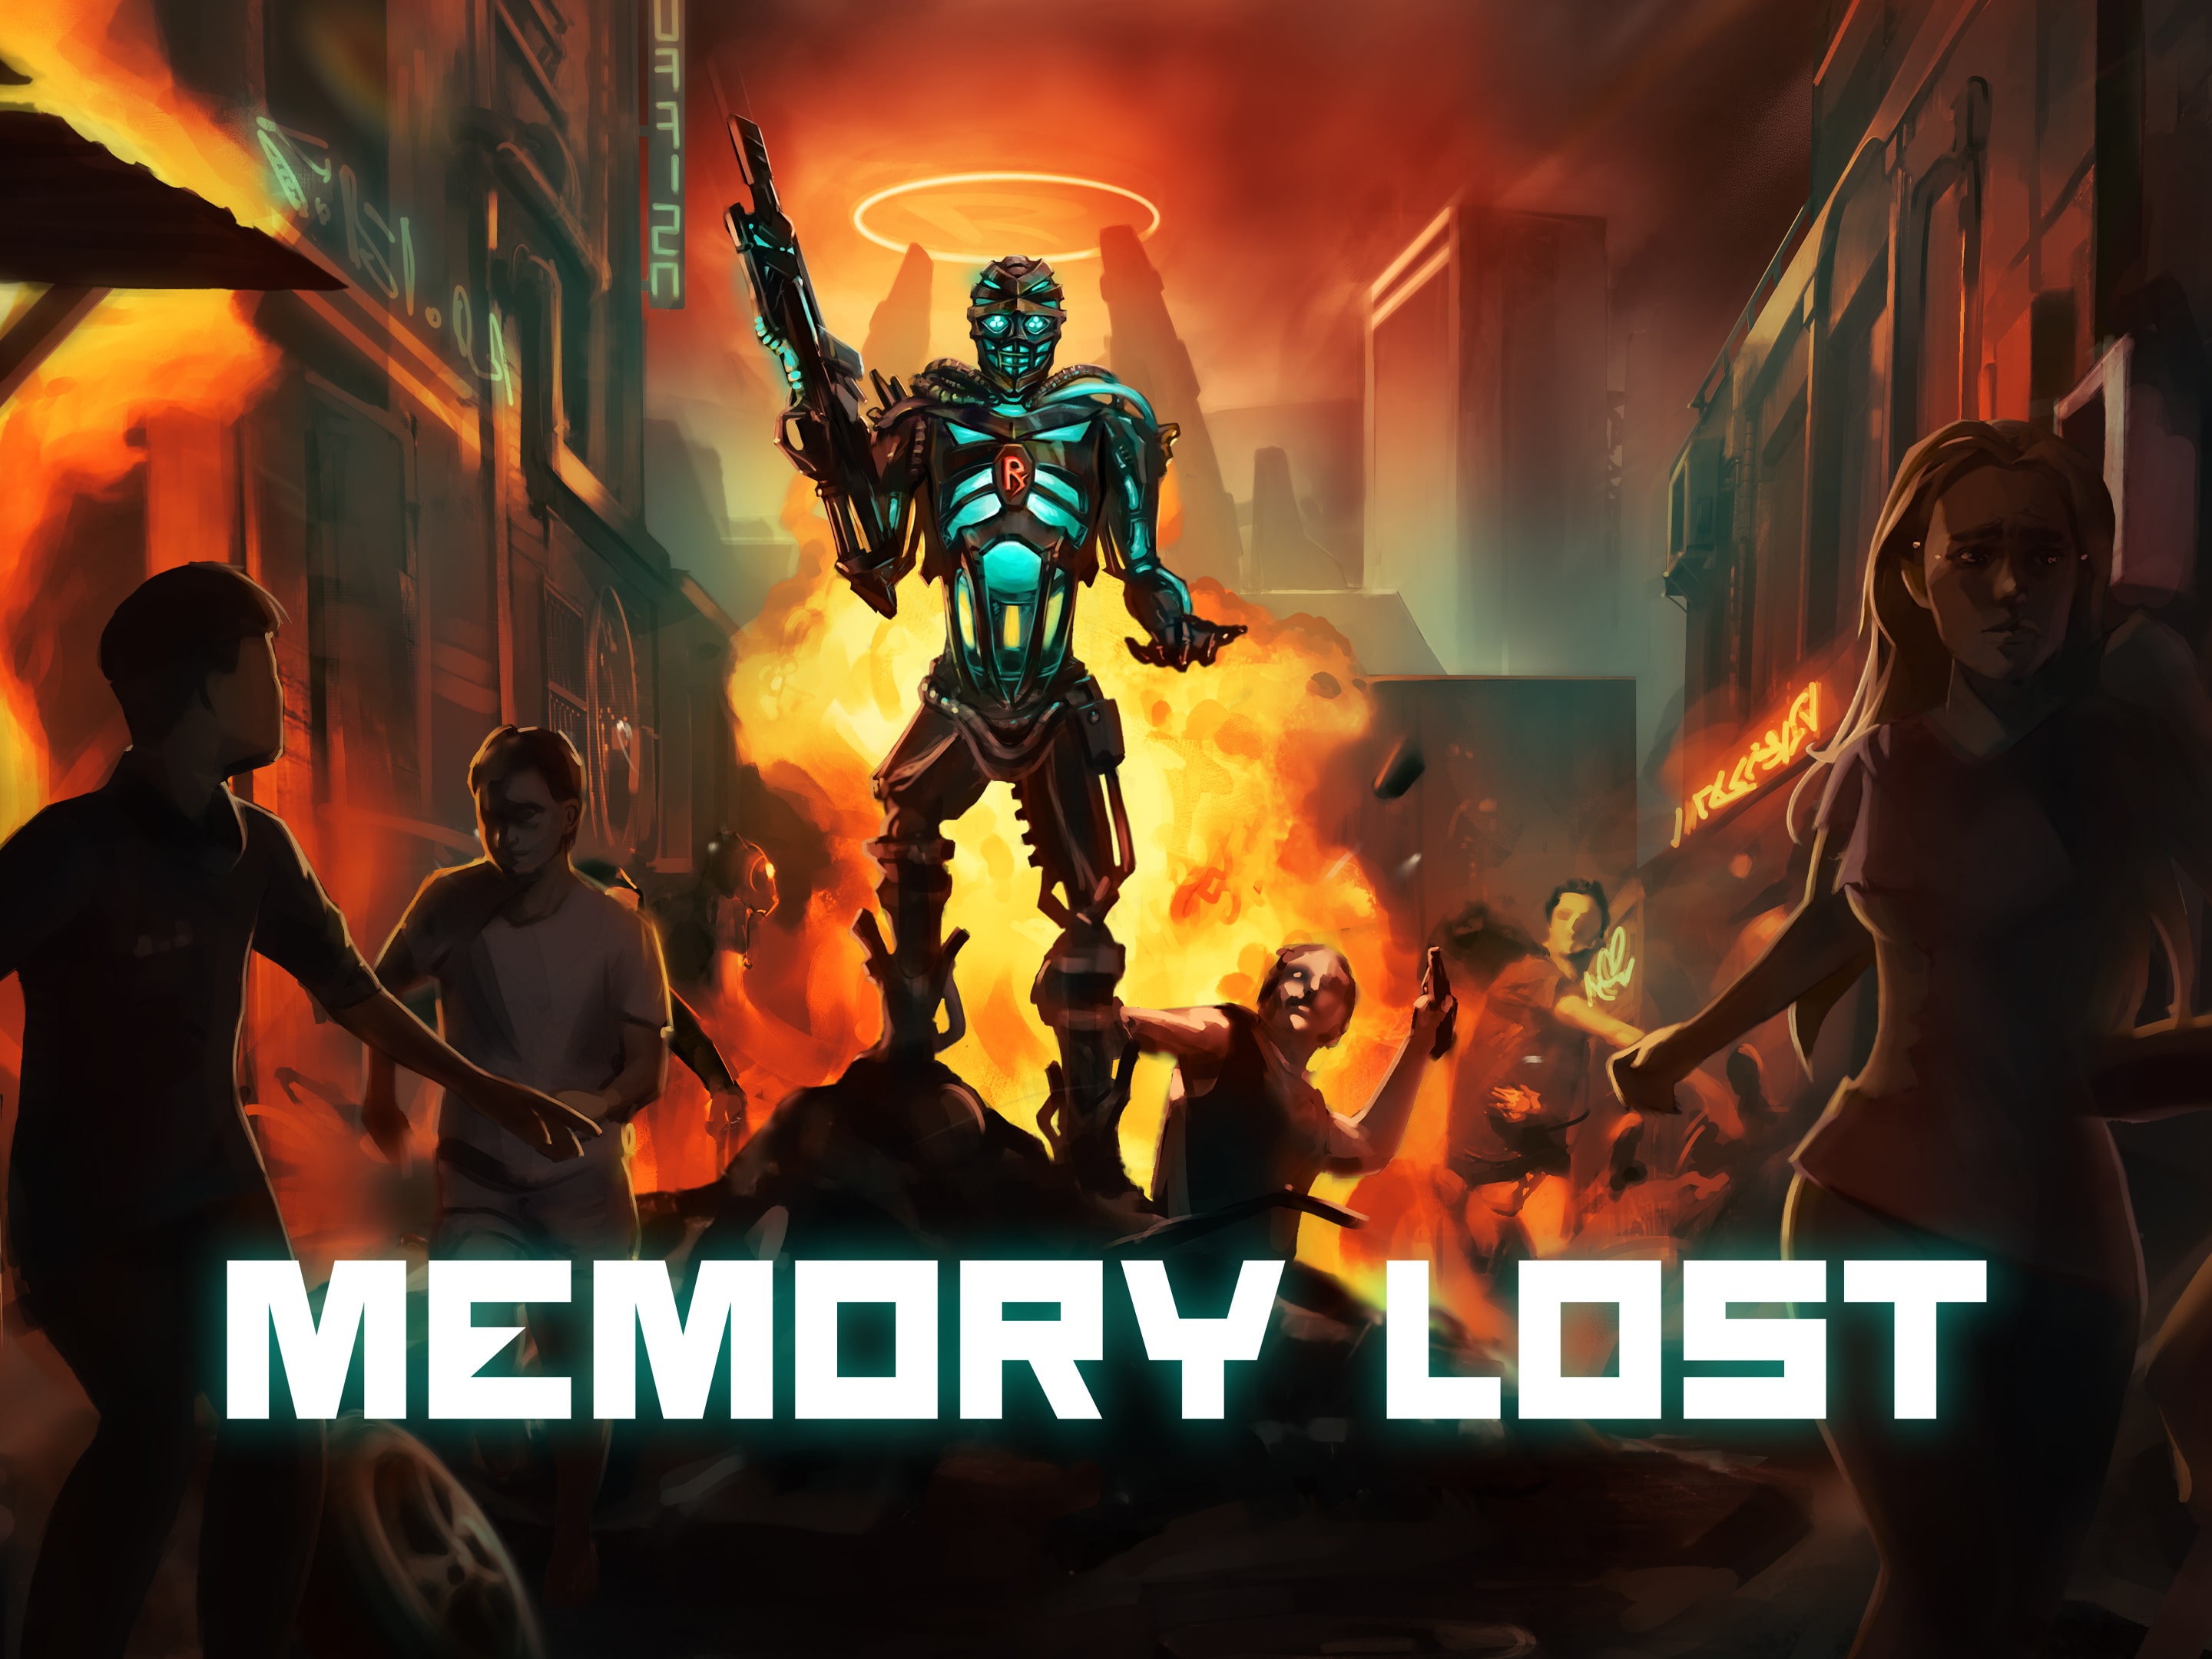 Memory Lost